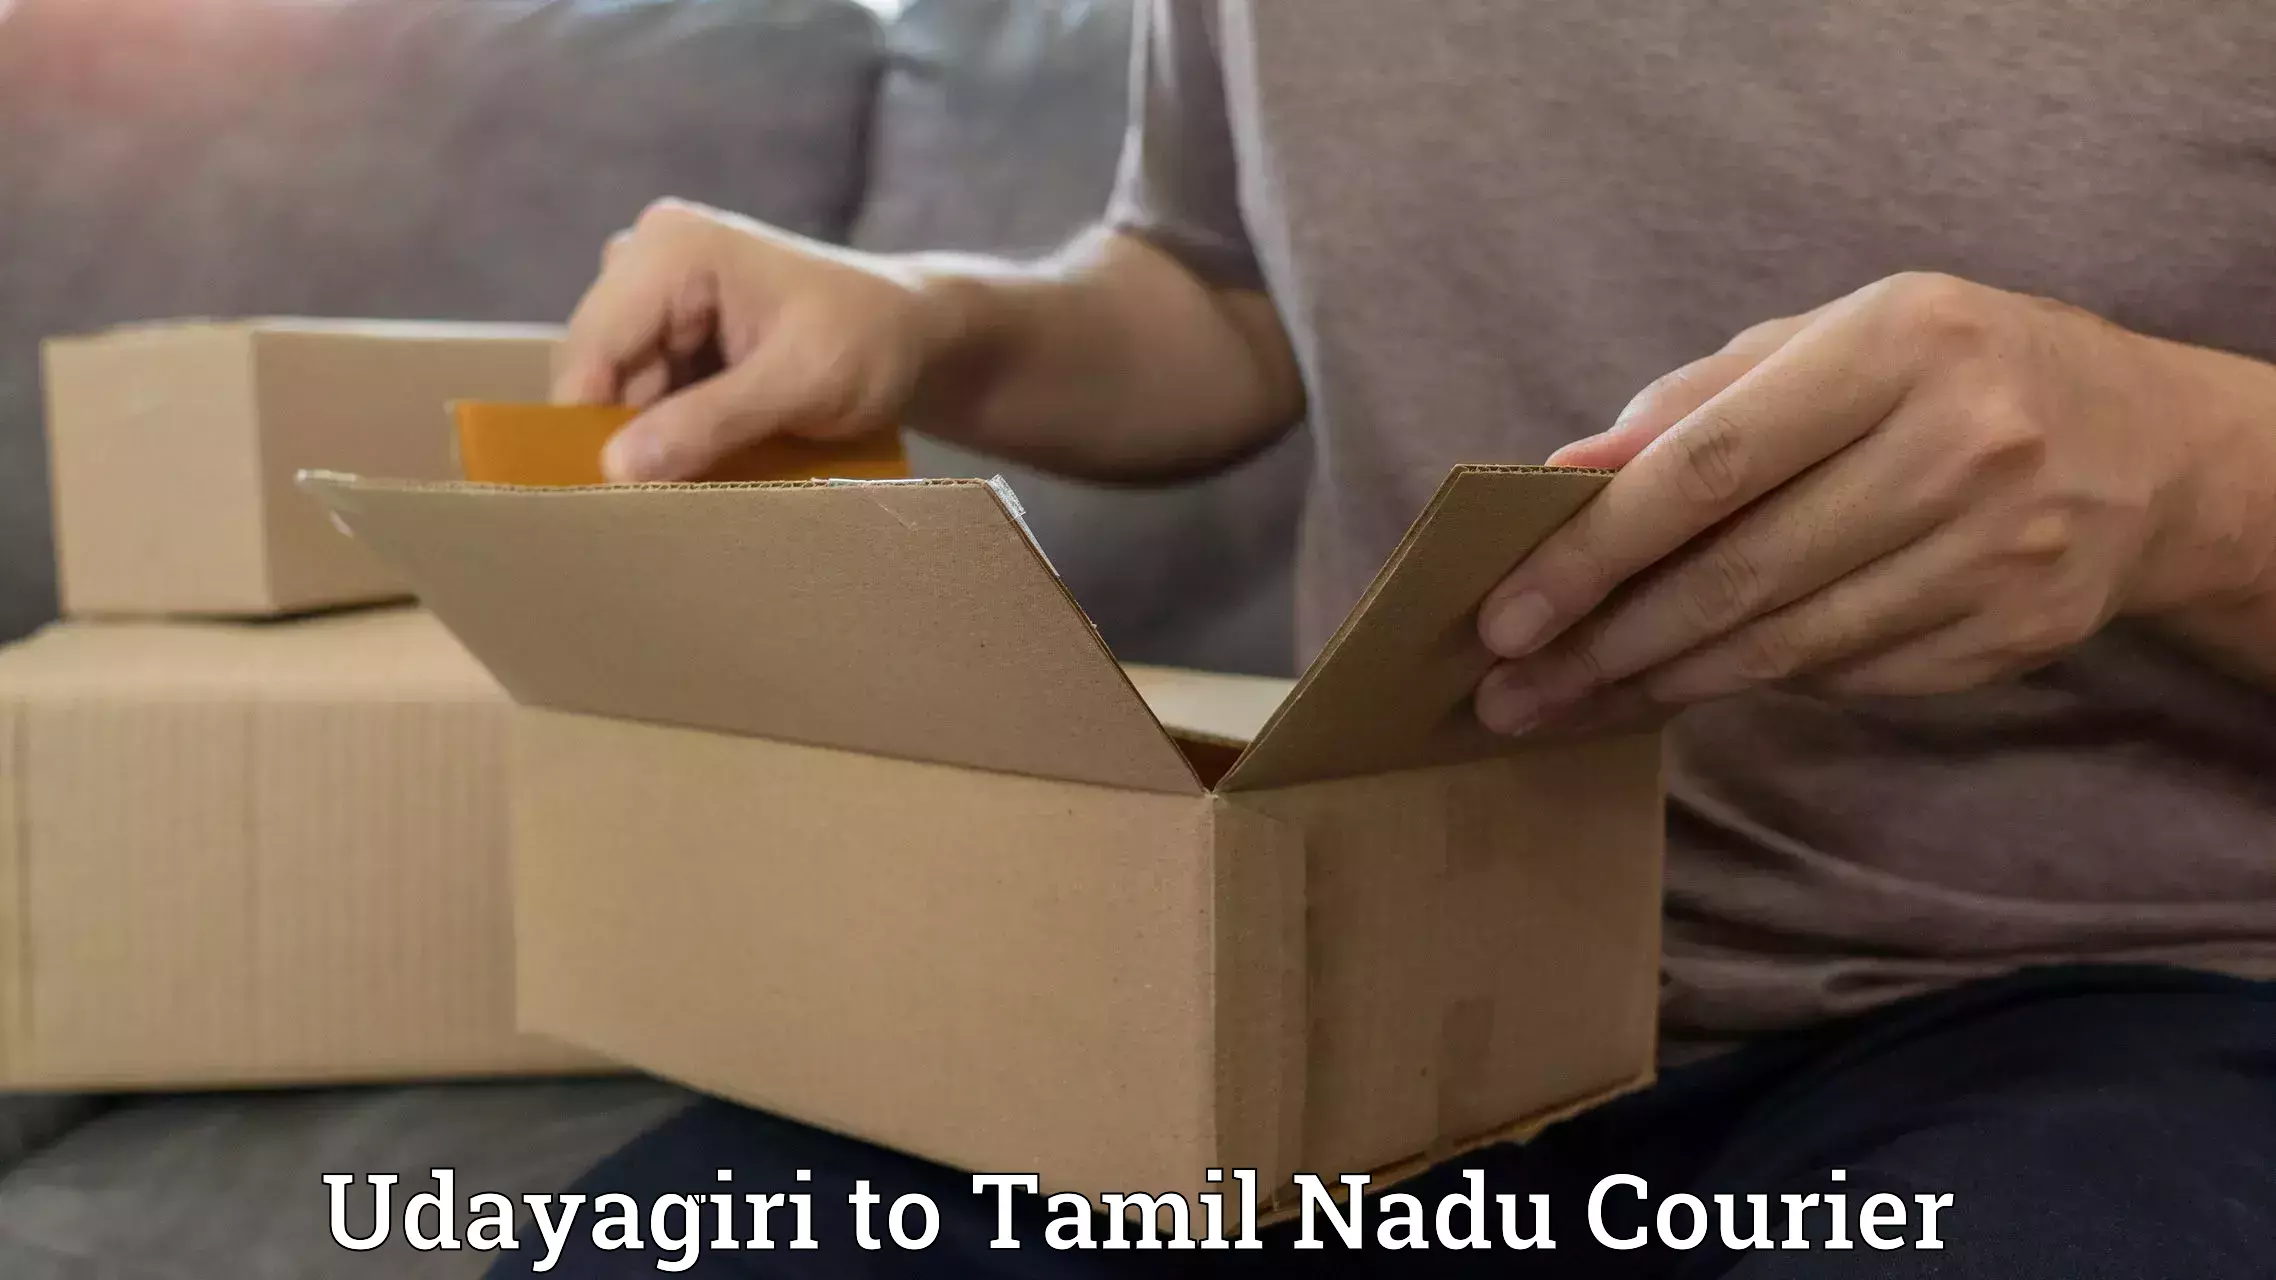 24-hour delivery options Udayagiri to Ariyalur